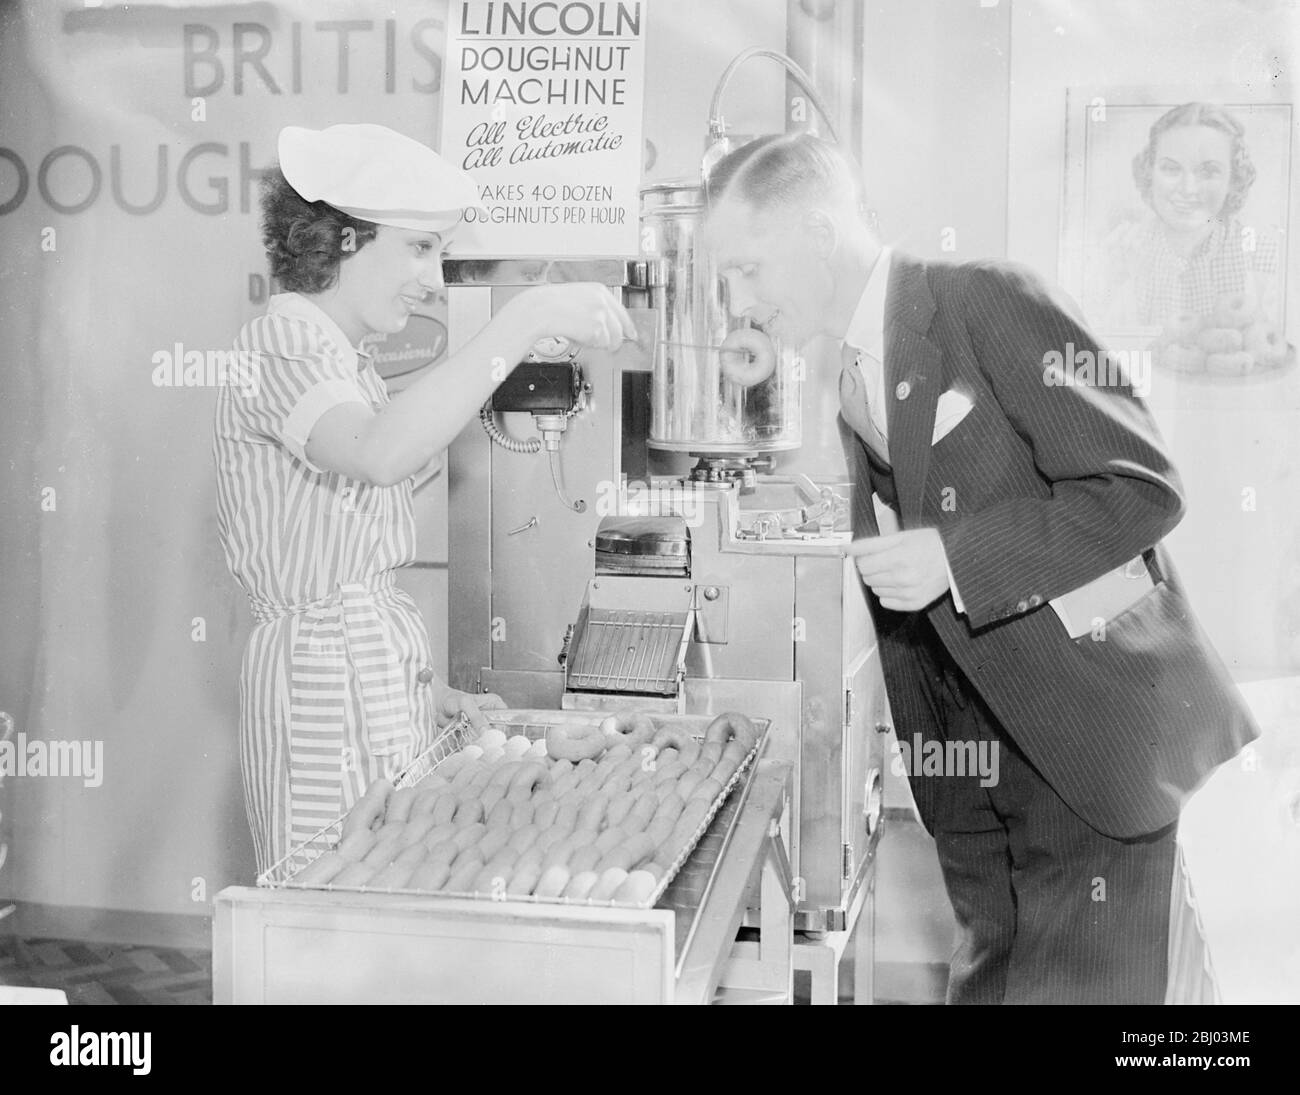 Le visiteur a un exemple de beignet de la machine à l'exposition des boulangers au Royal Agricultural Hall, Islington, Londres. Cette machine, qui fait des beignets d'une formule secrète a évolué après des années de recherche, se transforme en 40 douzaines de pâtisseries en une heure. - 6 septembre 1937. Banque D'Images